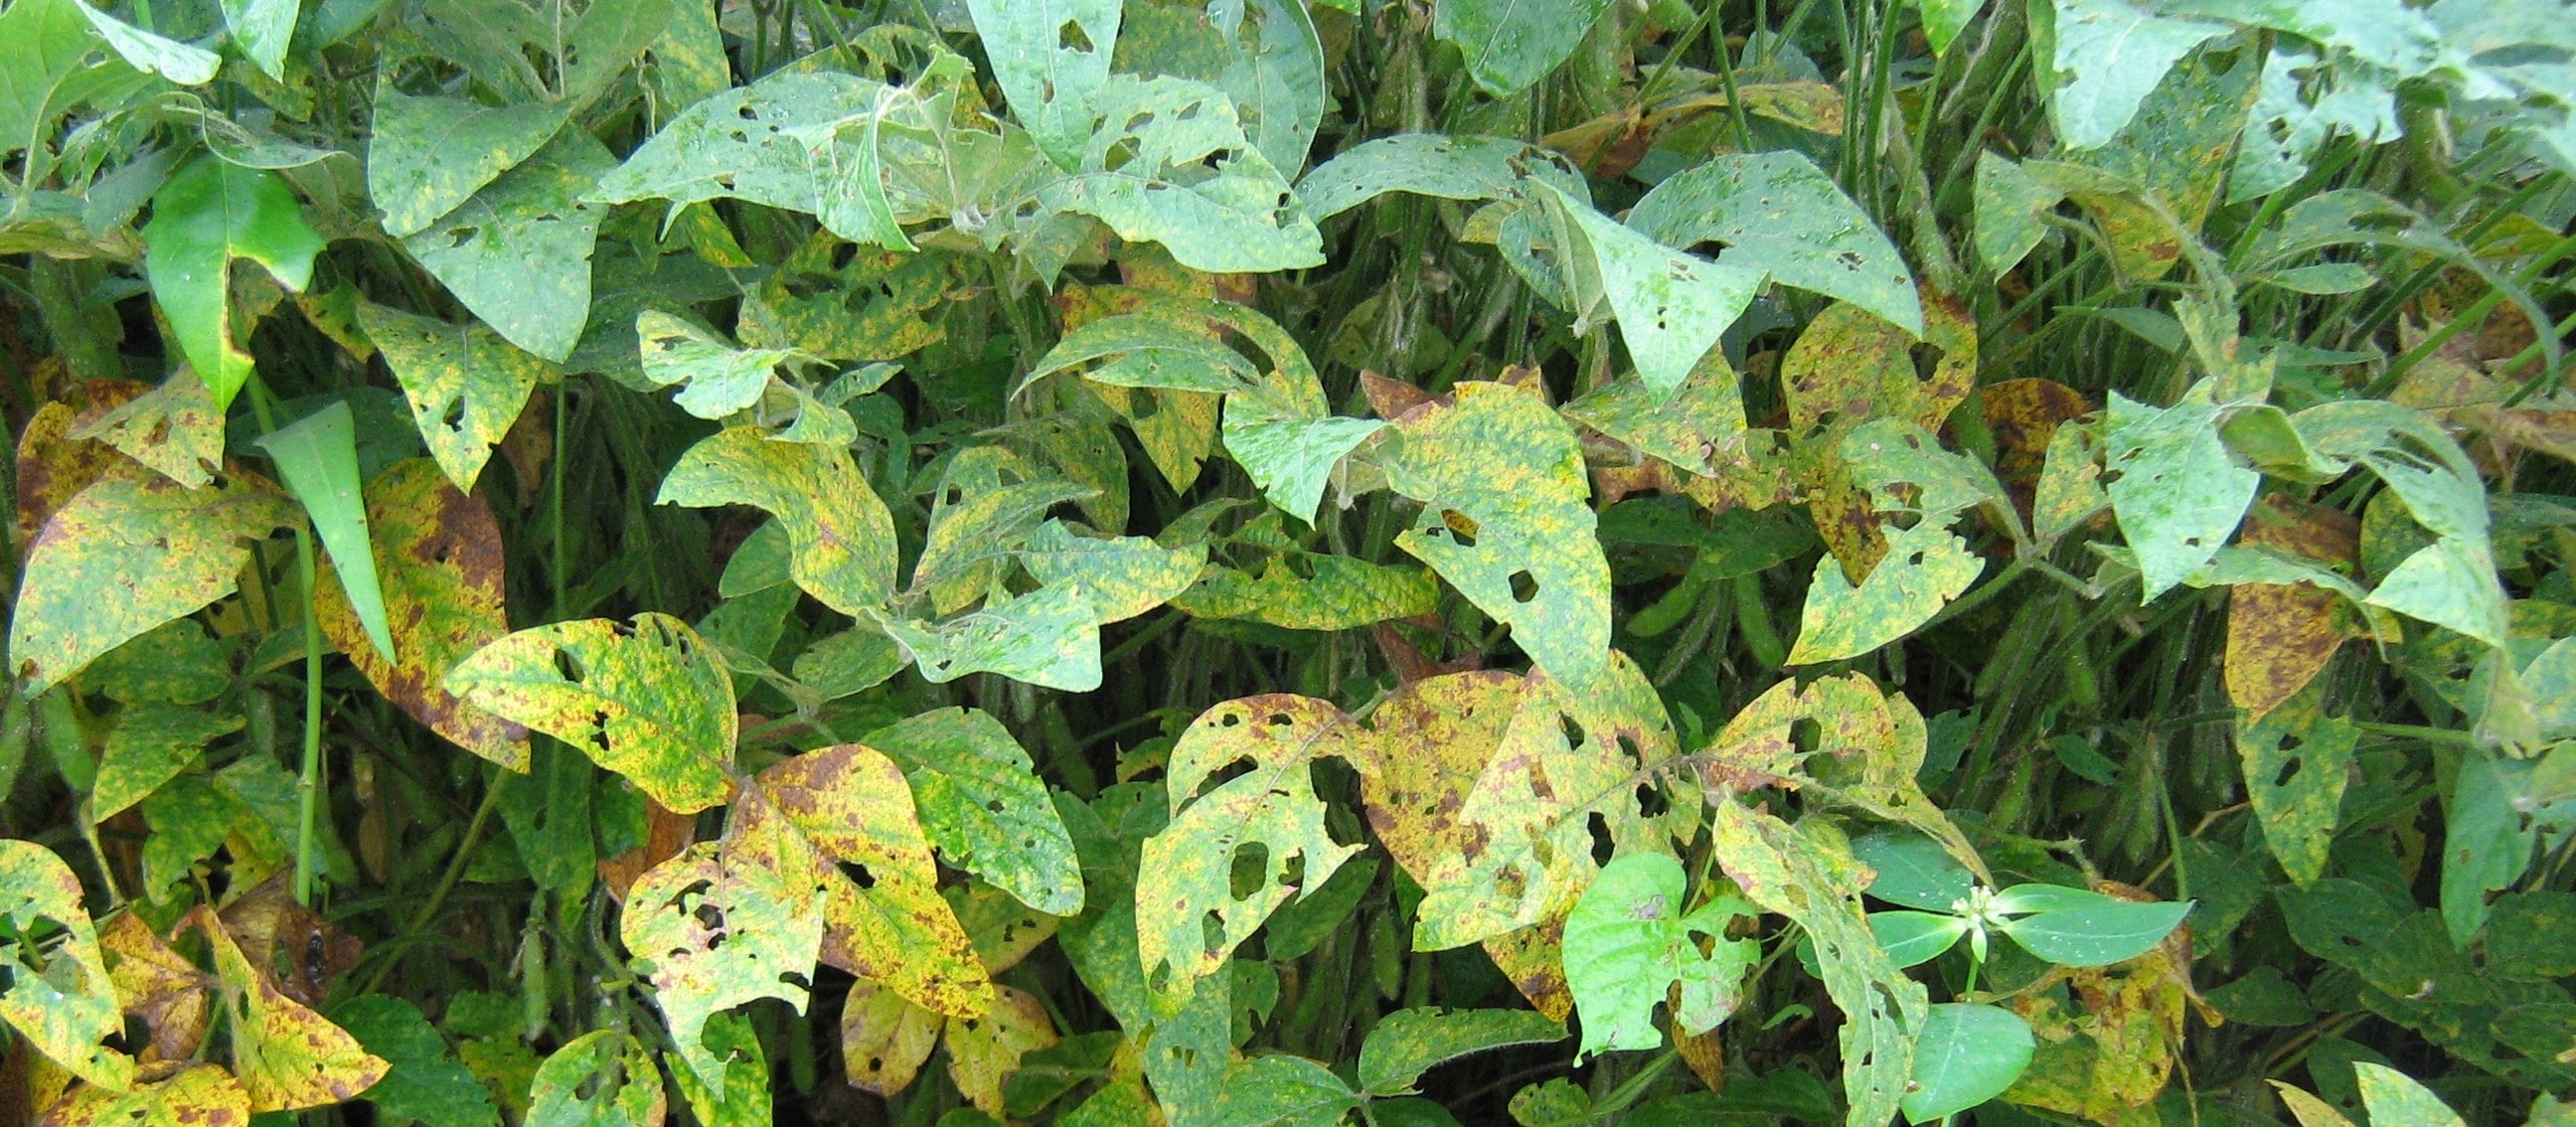 Doenças foliares começam a aparecer em lavouras de soja